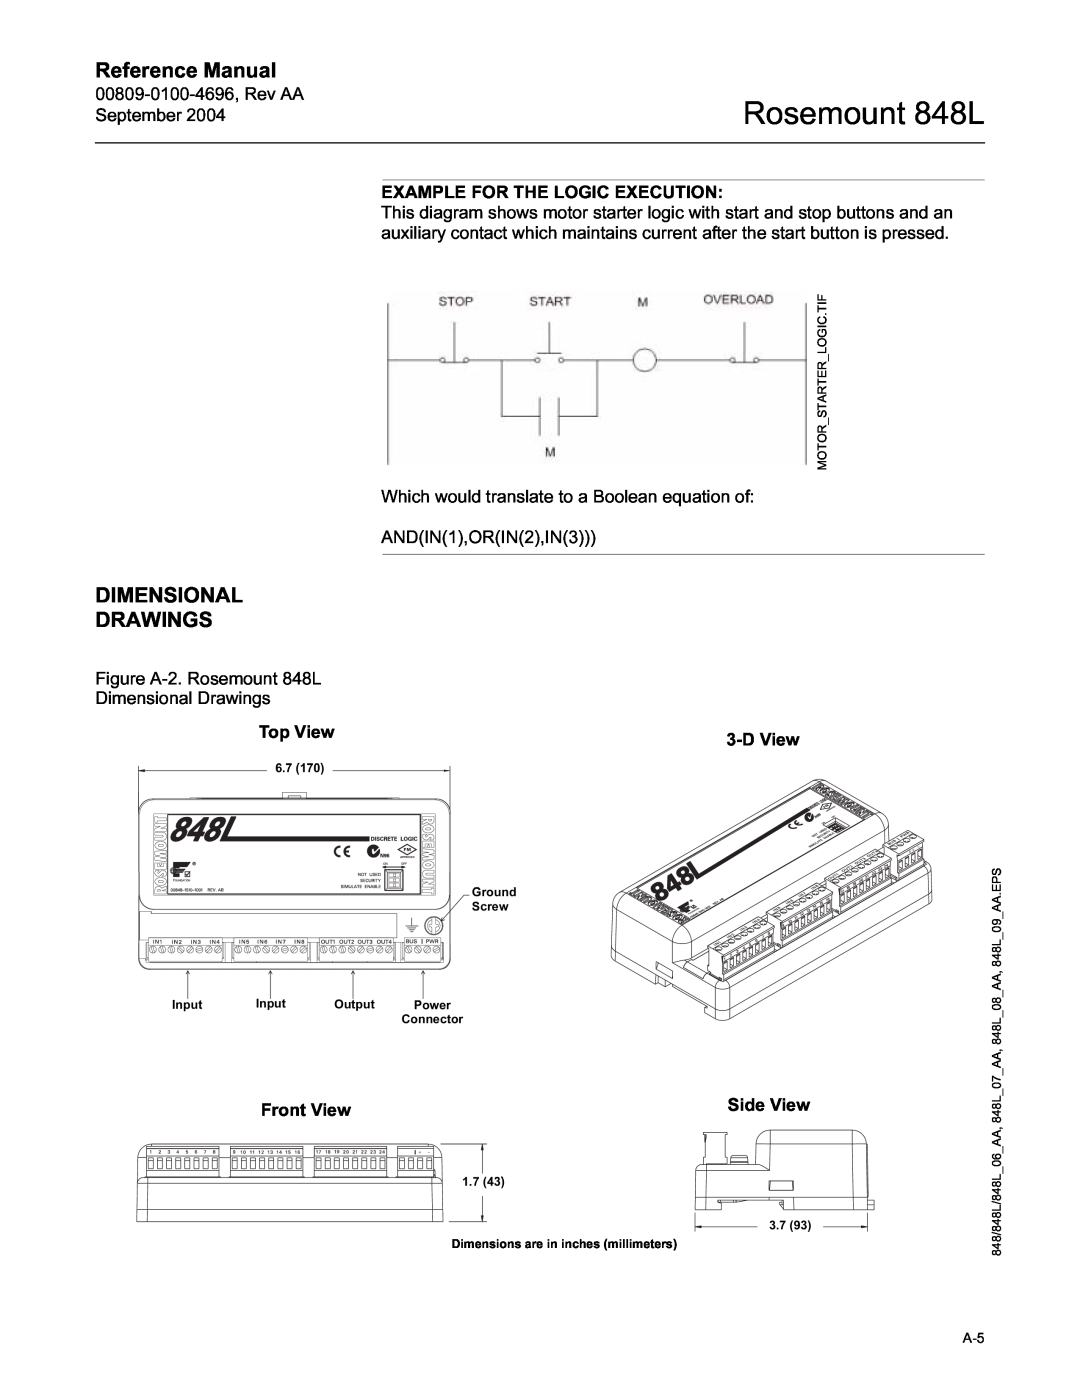 Emerson manual Dimensional Drawings, Rosemount 848L, Reference Manual 